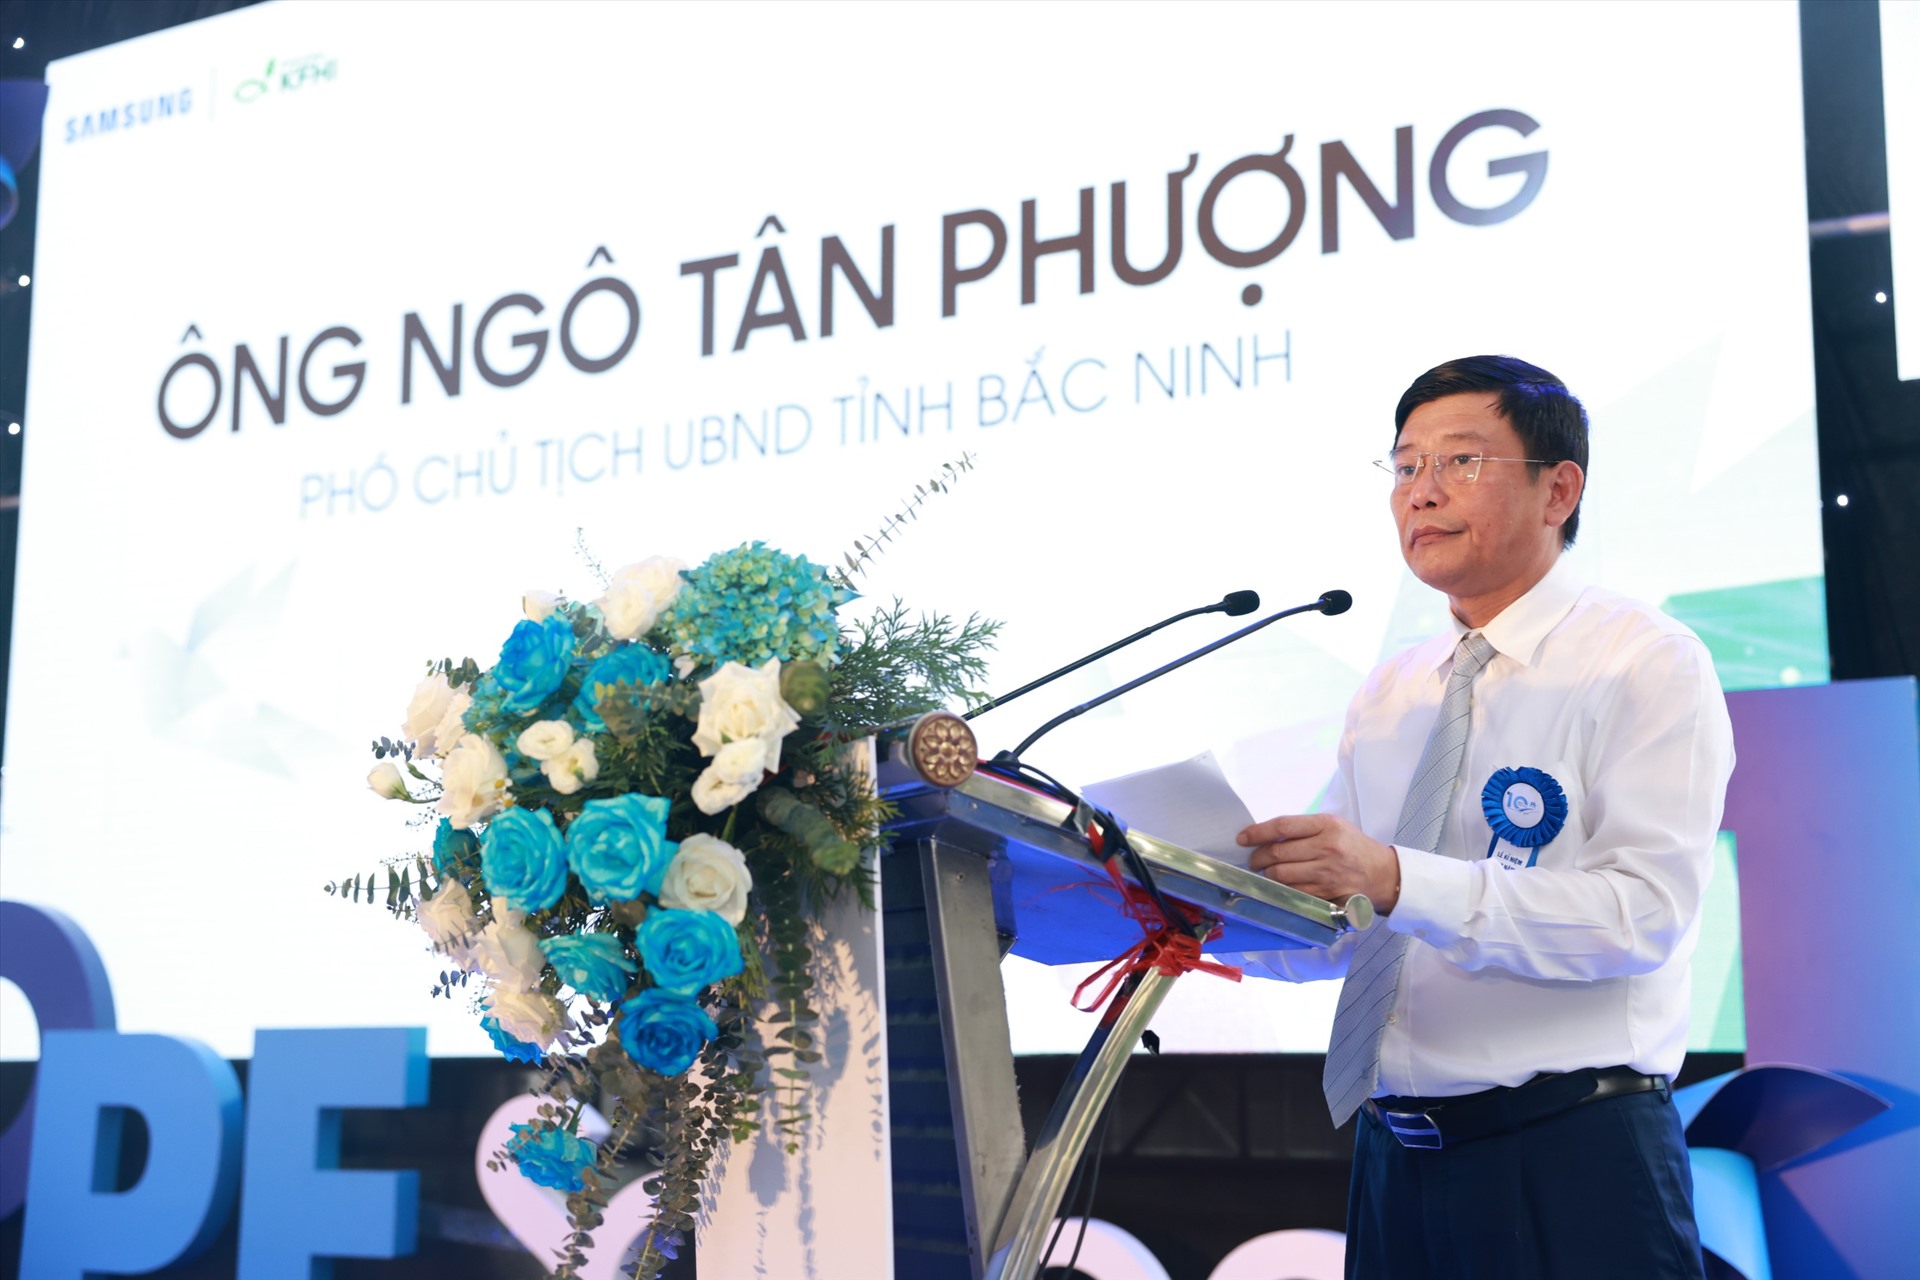 Ông Ngô Tân Phượng - Chủ tịch UBND tỉnh Bắc Ninh phát biểu tại sự kiện. Ảnh: Lương Hạnh. 